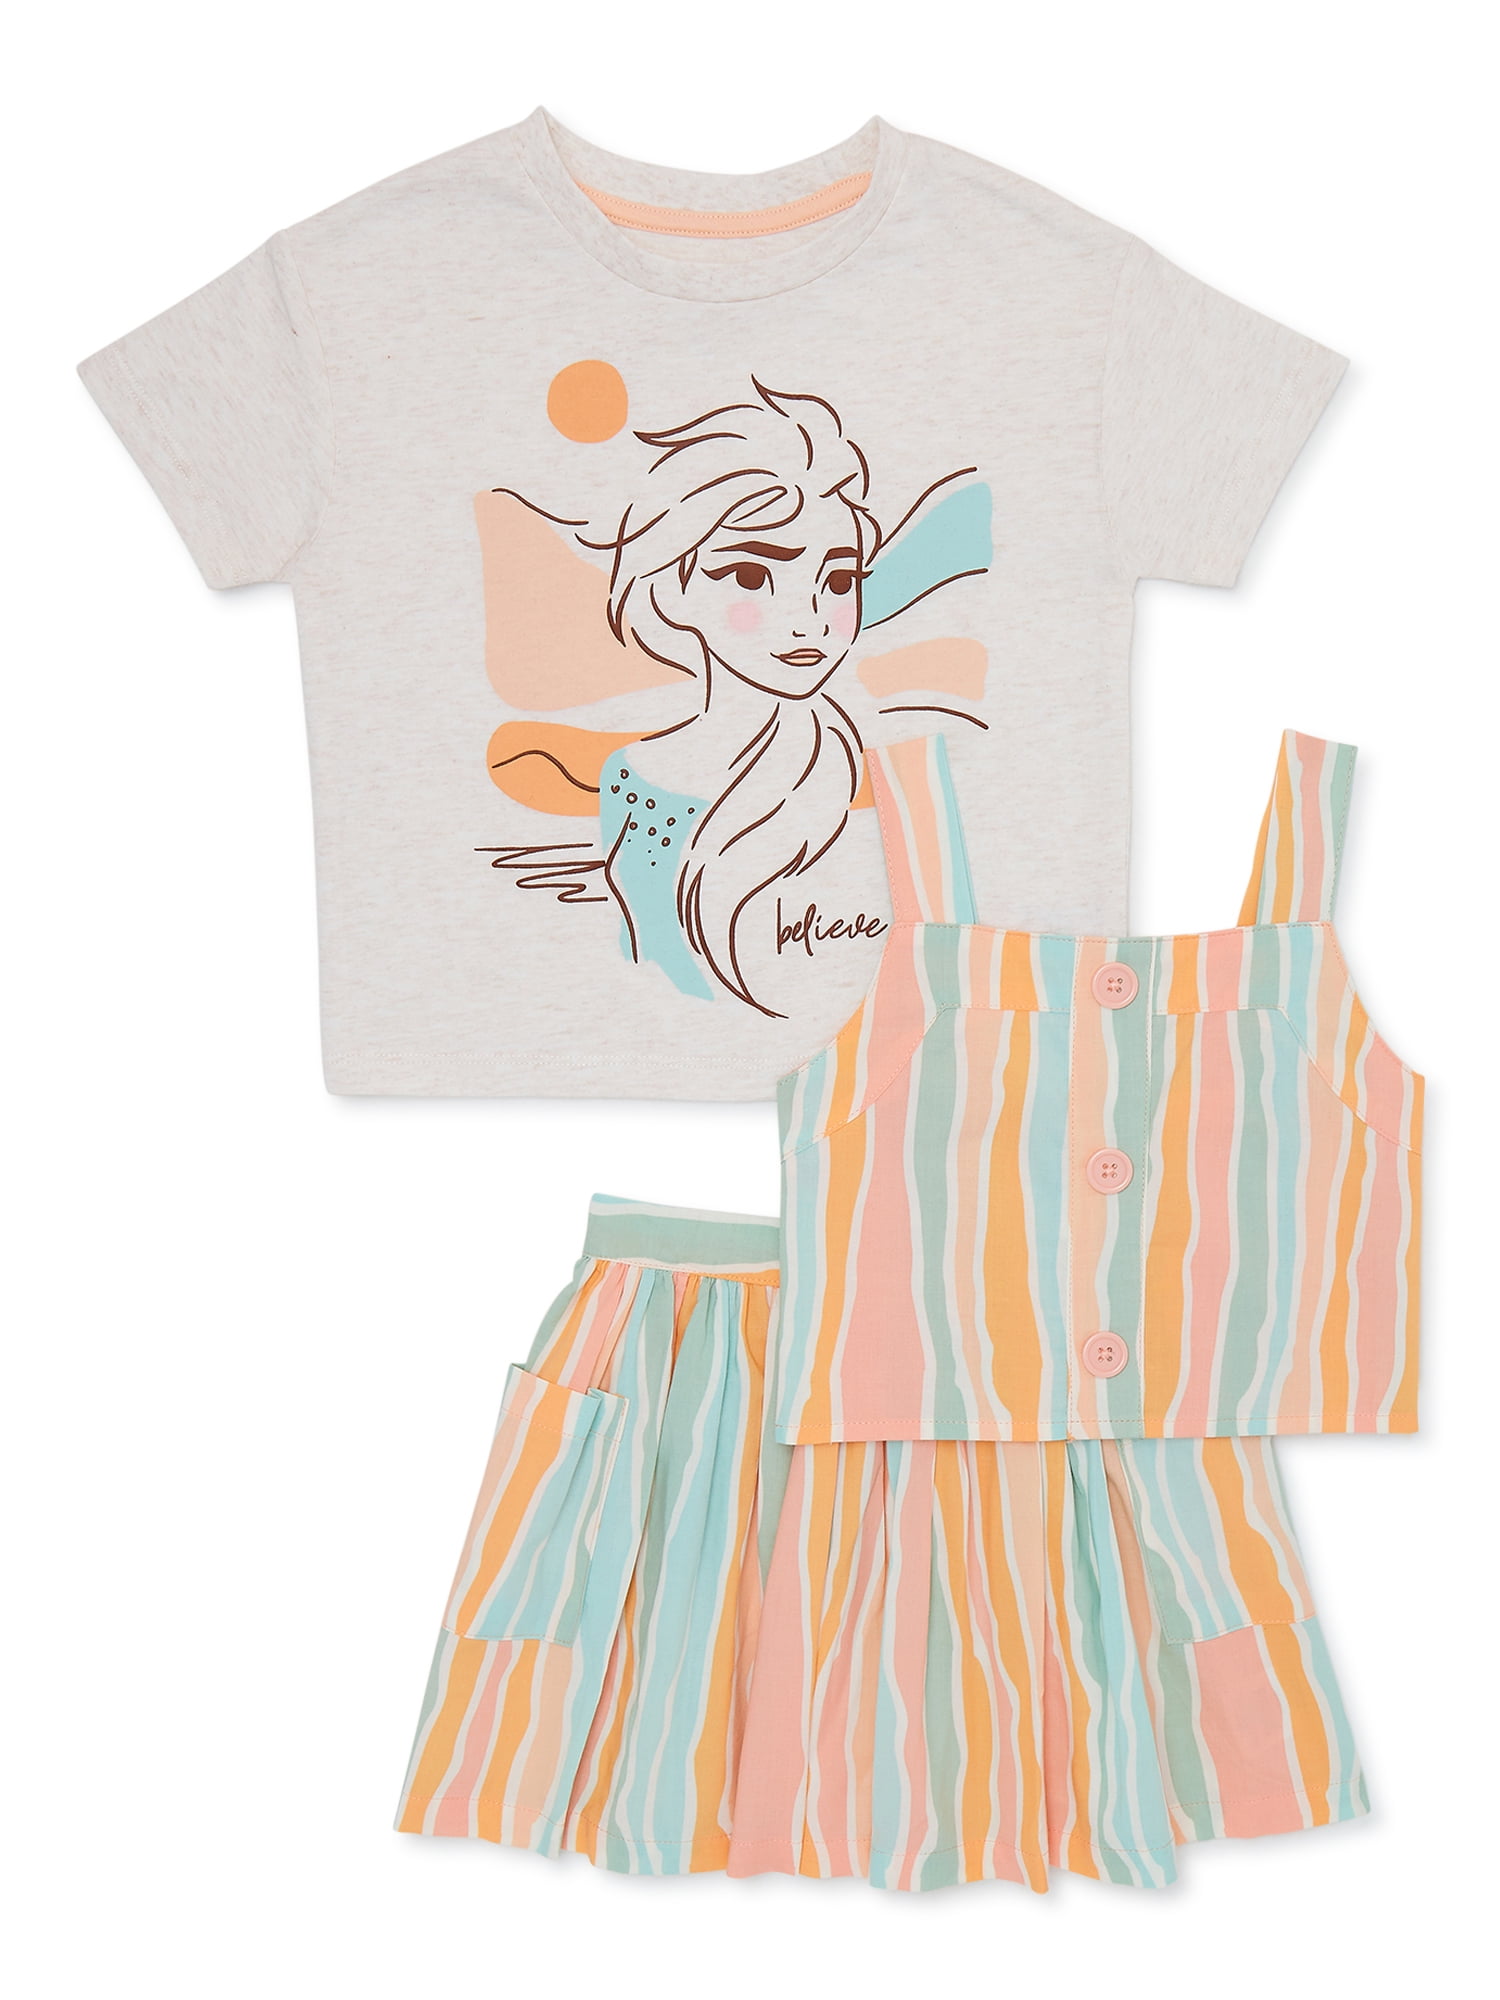 Frozen Toddler Girls T-Shirt, Tank and Skirt Set, 3-Piece, Sizes 2T-5T